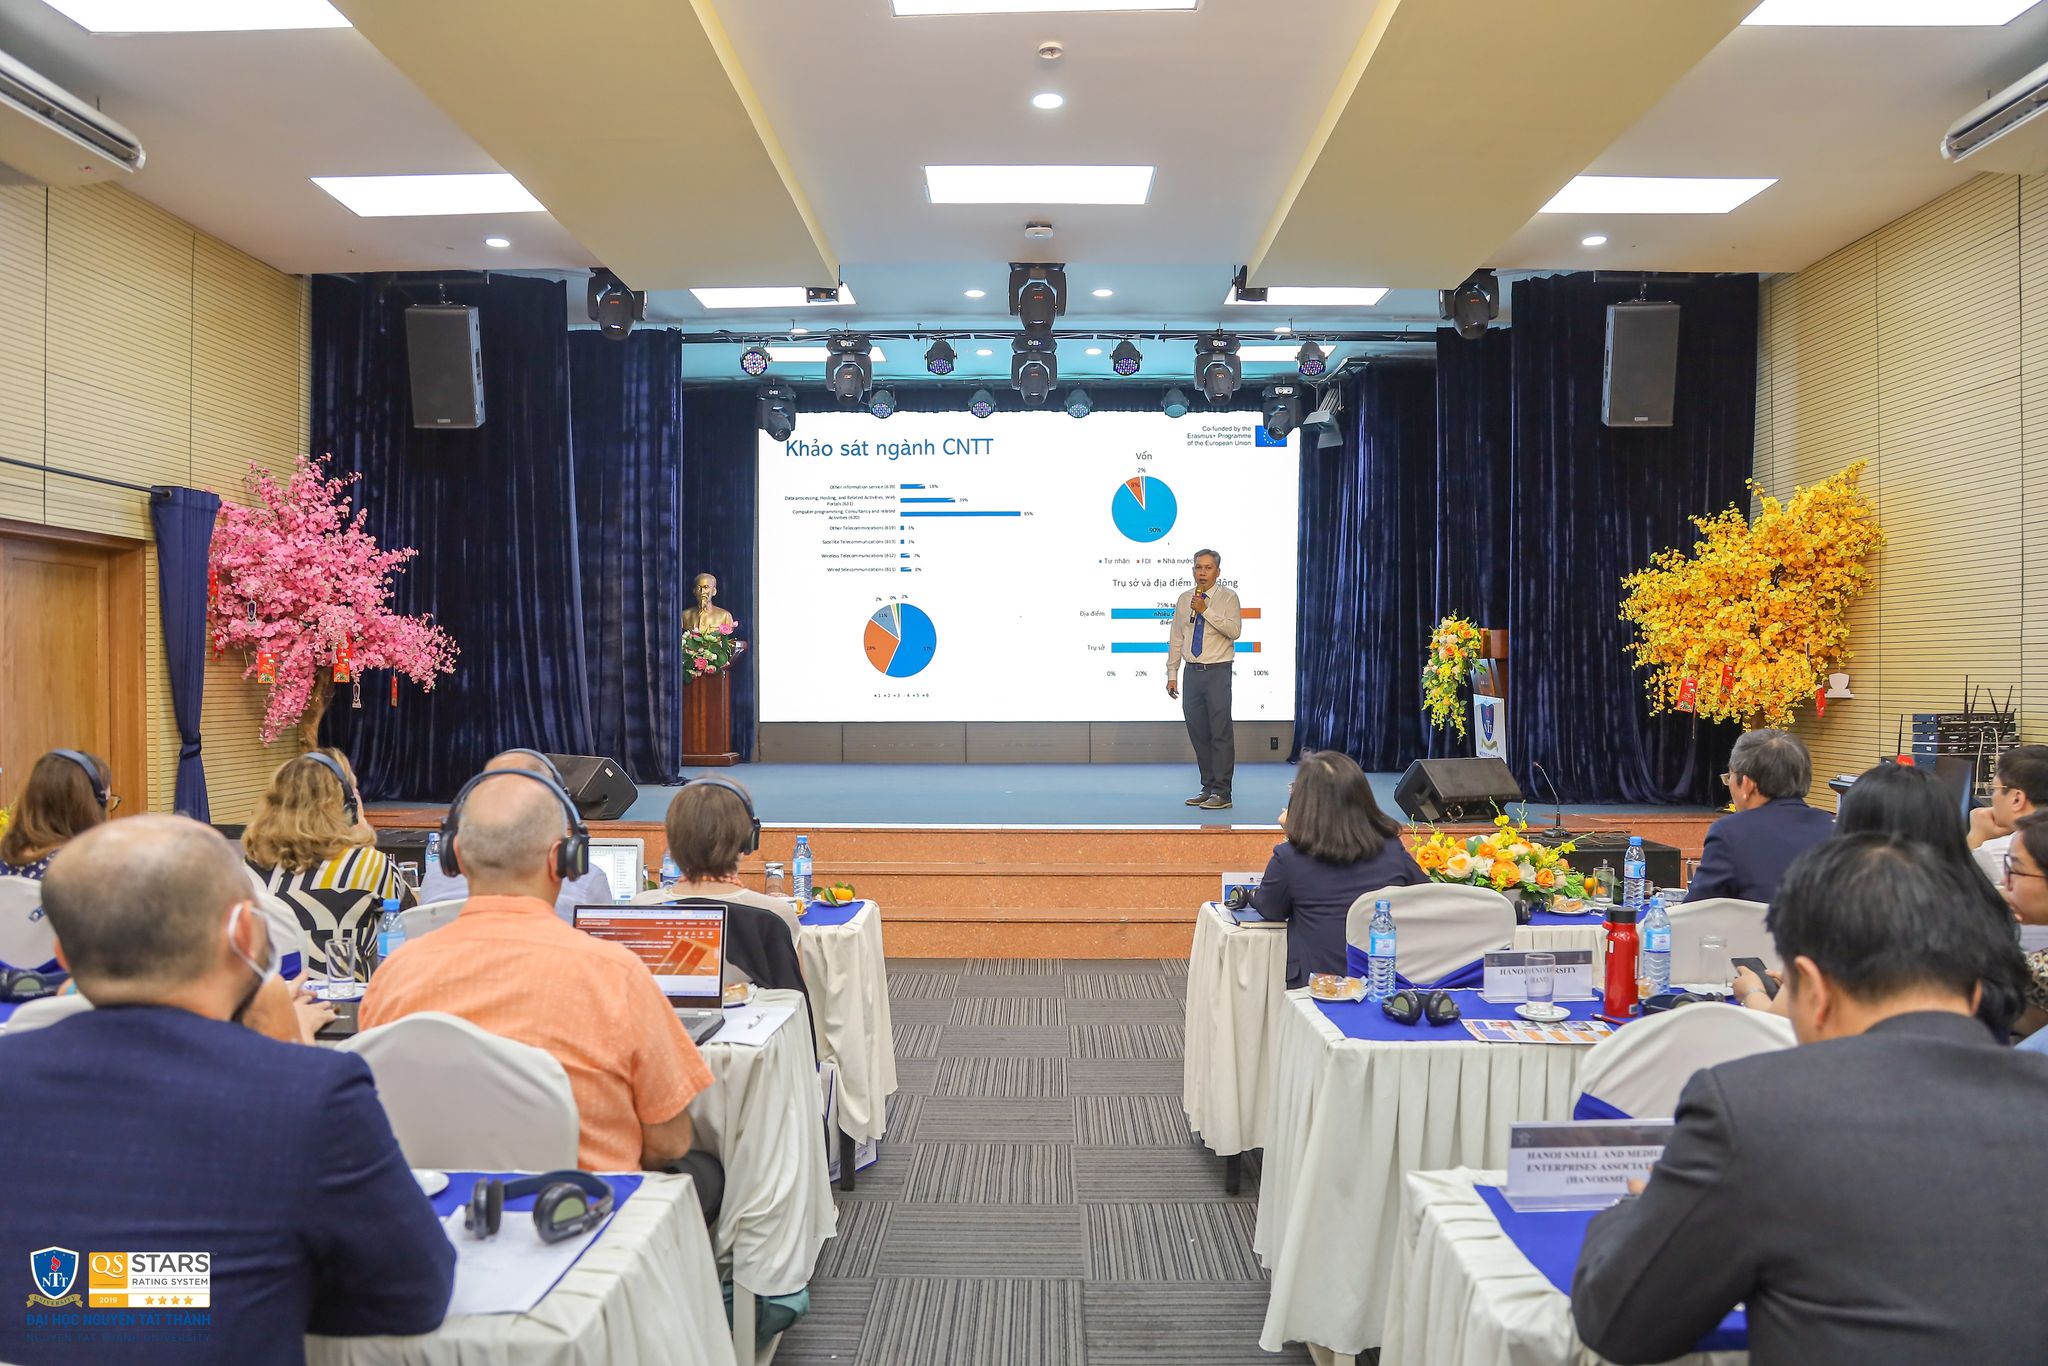 TS. Nguyễn Tuấn Anh – Phó hiệu trưởng Trường ĐH Nguyễn Tất Thành, trình bày chuyên đề Khảo sát thị trường ICT